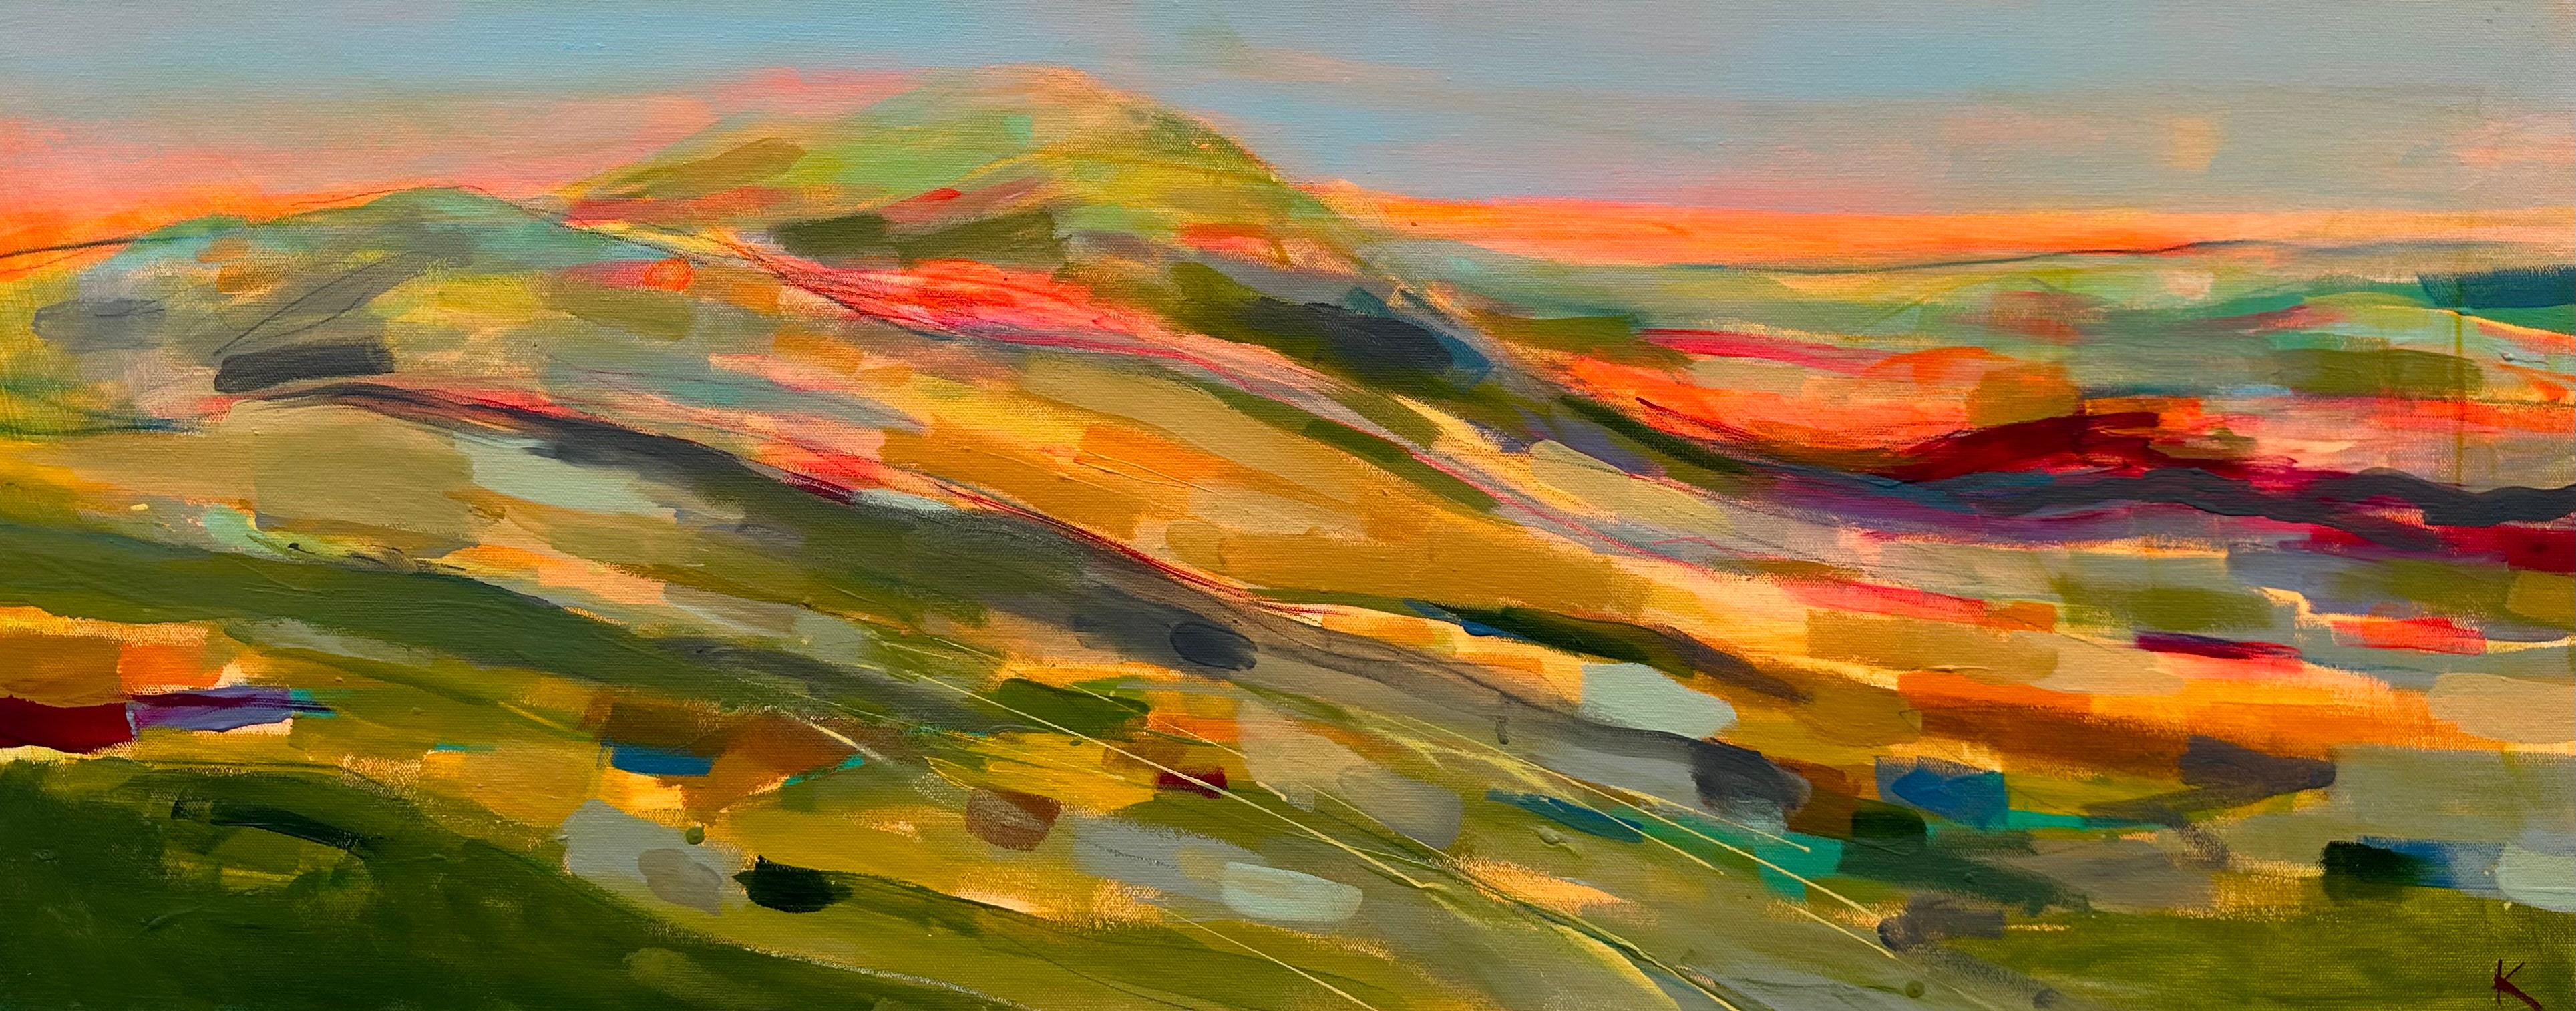 Sponge painting technique / Layered hills landscape painting